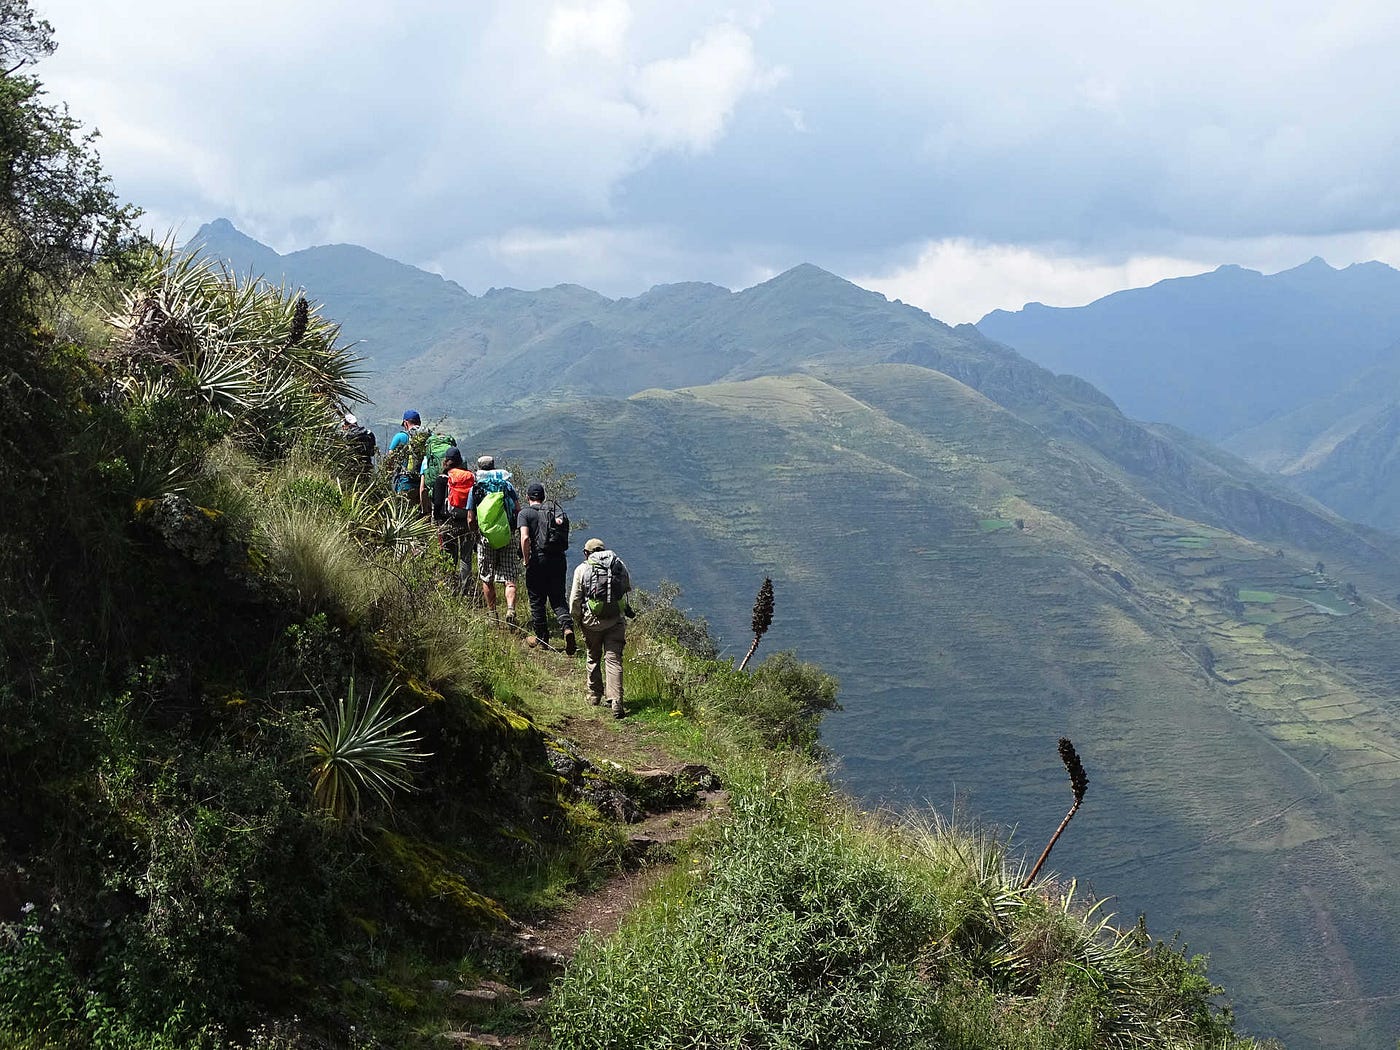 Climbing Misti Volcano - Arequipa, PeruPeruvian Colca Trails